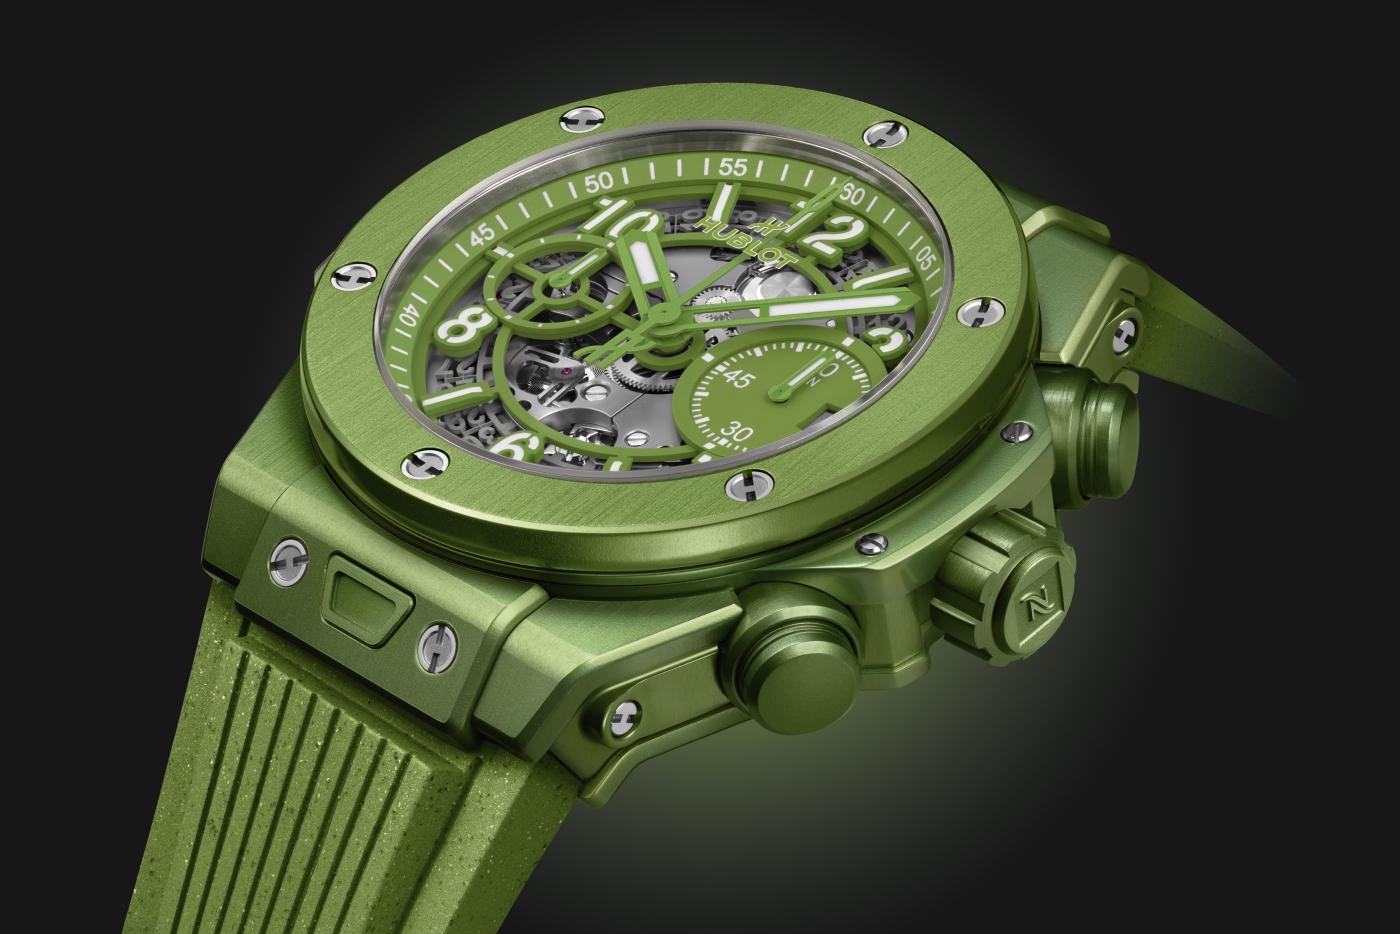 新款腕錶直徑42.5毫米，厚度14.5毫米。錶殼採用再生鋁製成，經陽極氧化處理，呈現鮮綠色調，並採用拉絲和拋光交替潤飾，配備藍寶石水晶鏡面、飾有“N”（代表Nespresso）字樣的表冠、以及生態鈦表背，具有100米優良防水性能